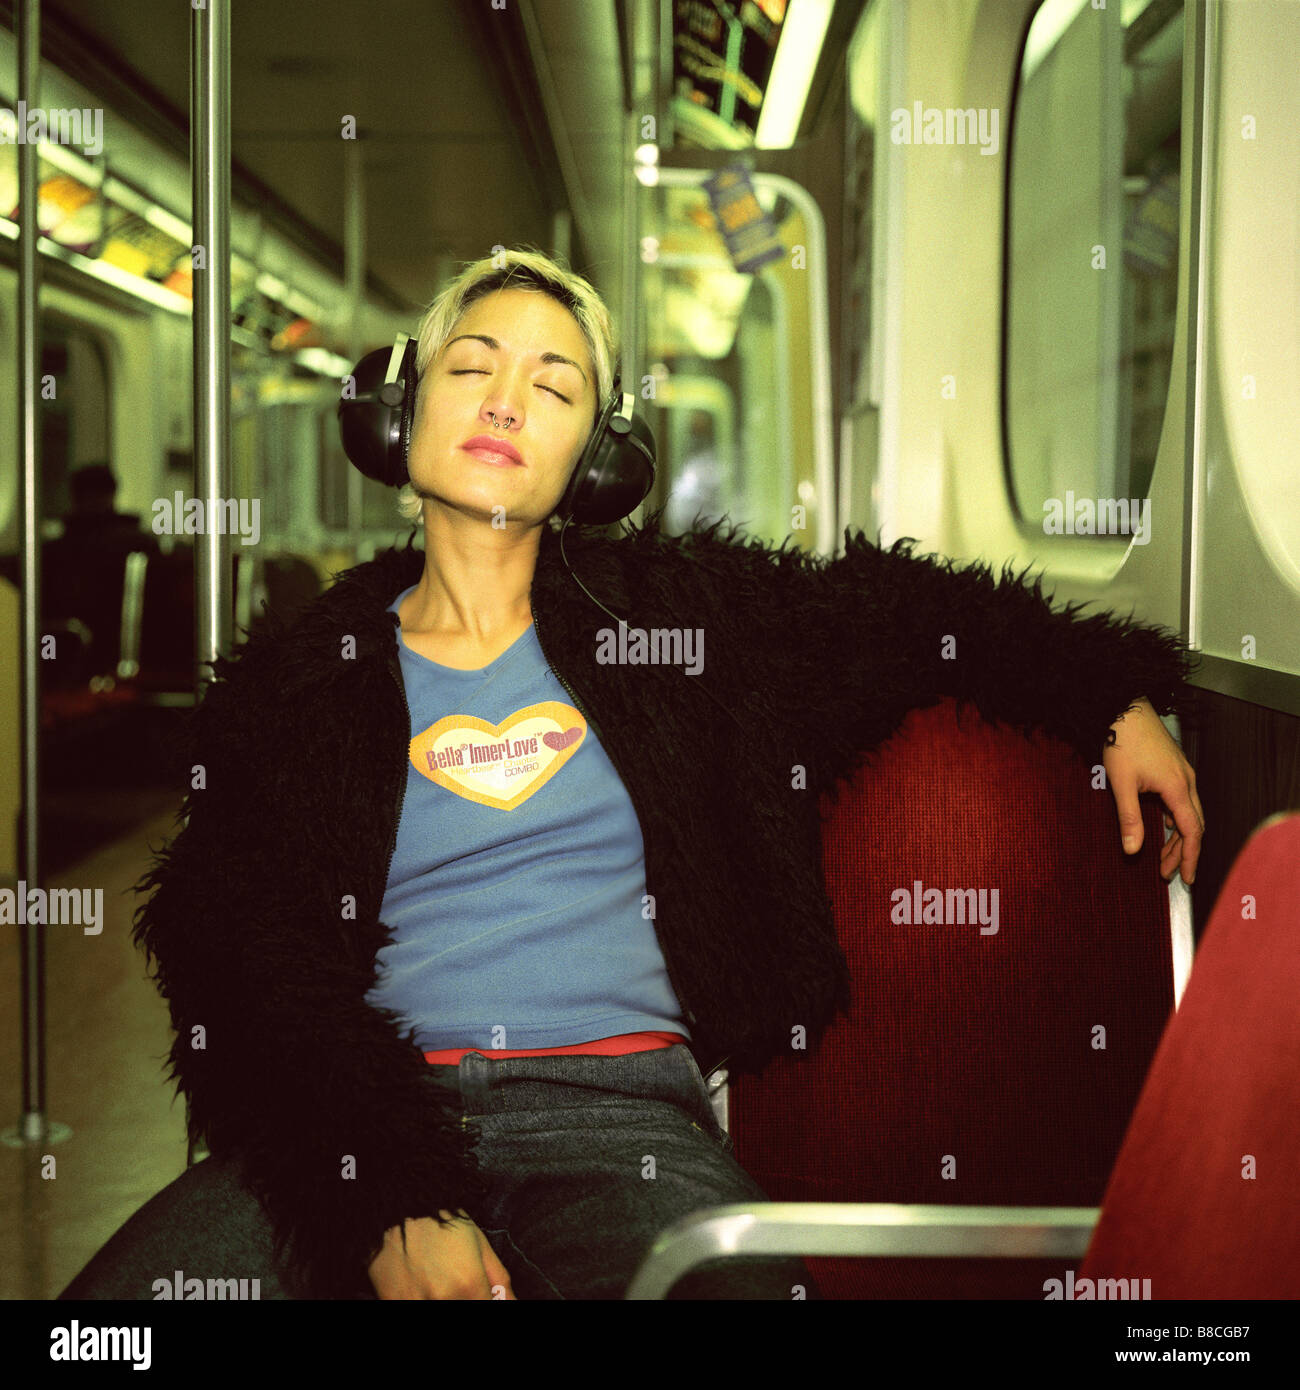 FL6303, Huy Lam; giovane donna che indossa le cuffie alla metropolitana sorridente cercando gli occhi chiusi Foto Stock